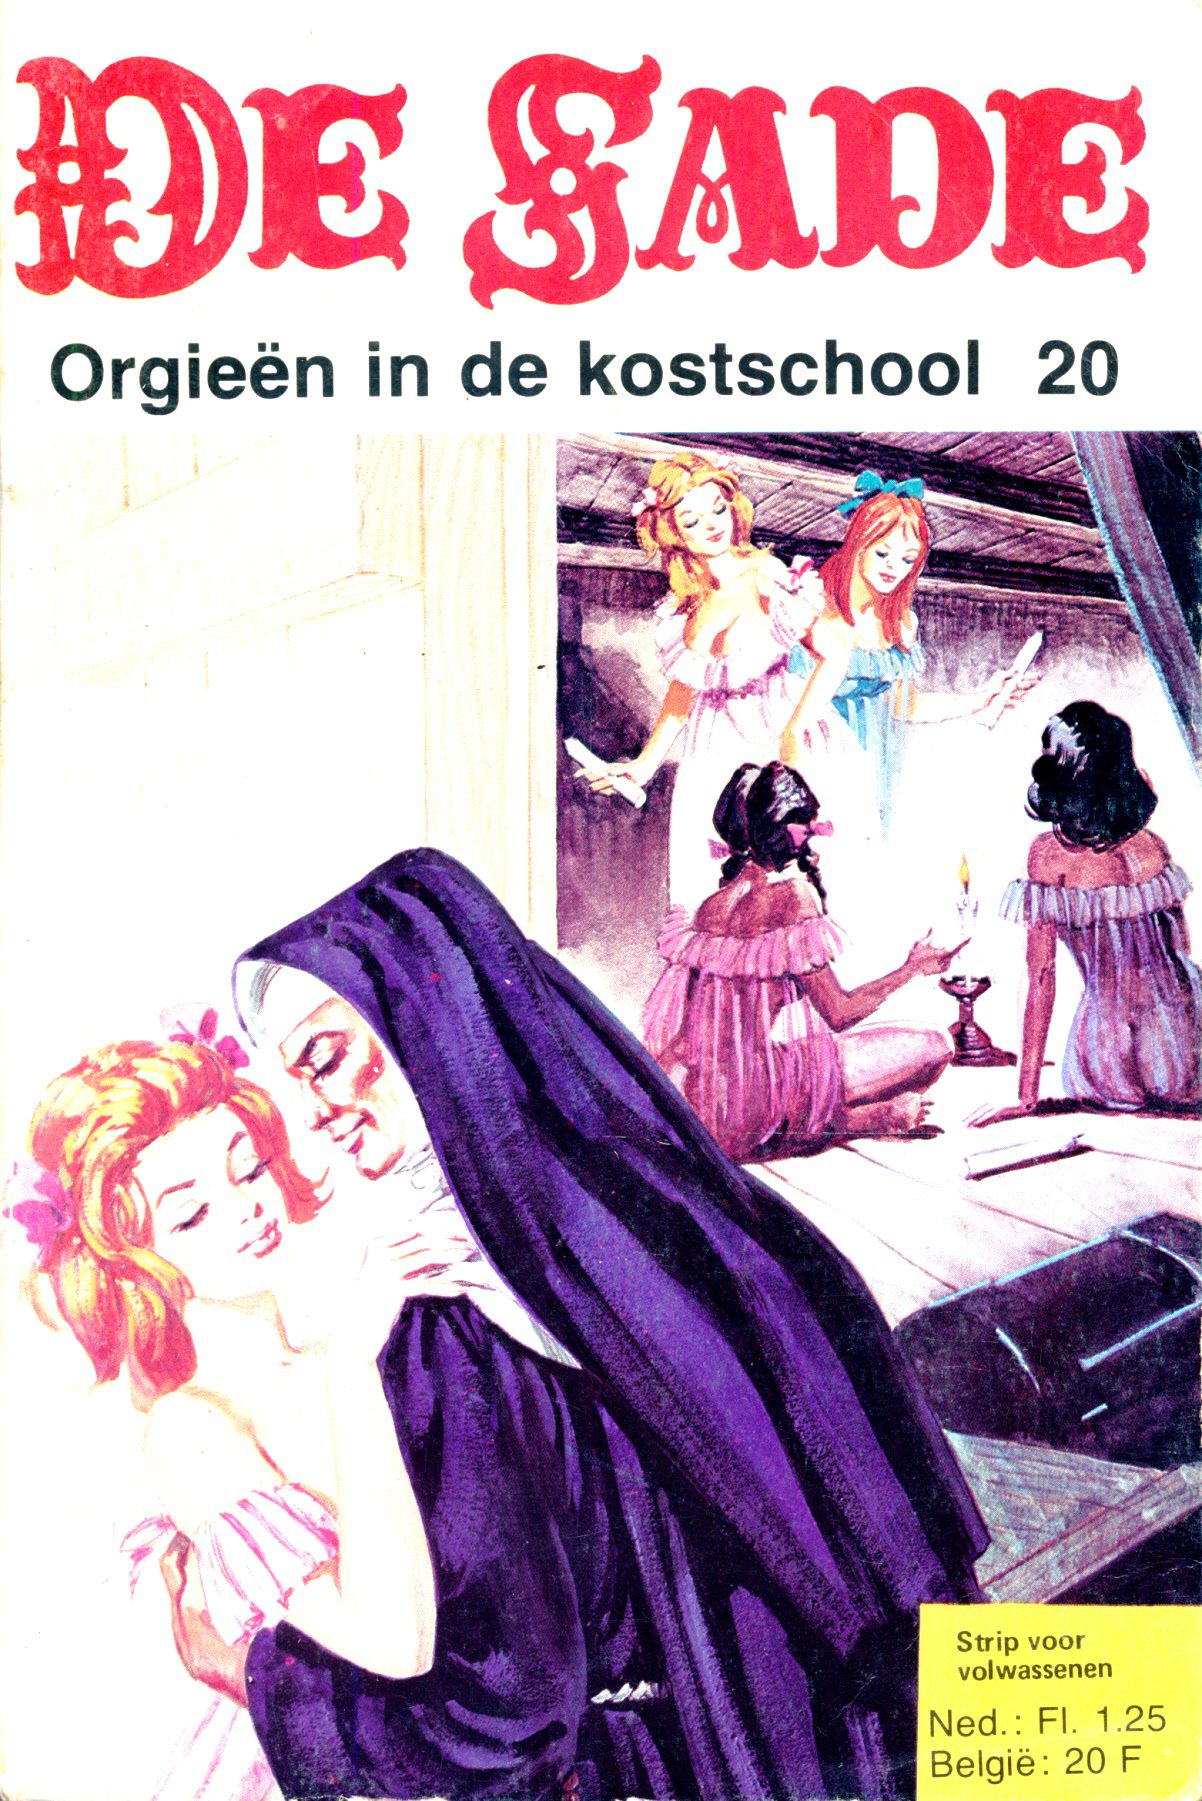 Orgieën In De Kostschool (Dutch) In 5 series...53 Nog niet geplaatste strips uit de "De Sade" serie 1